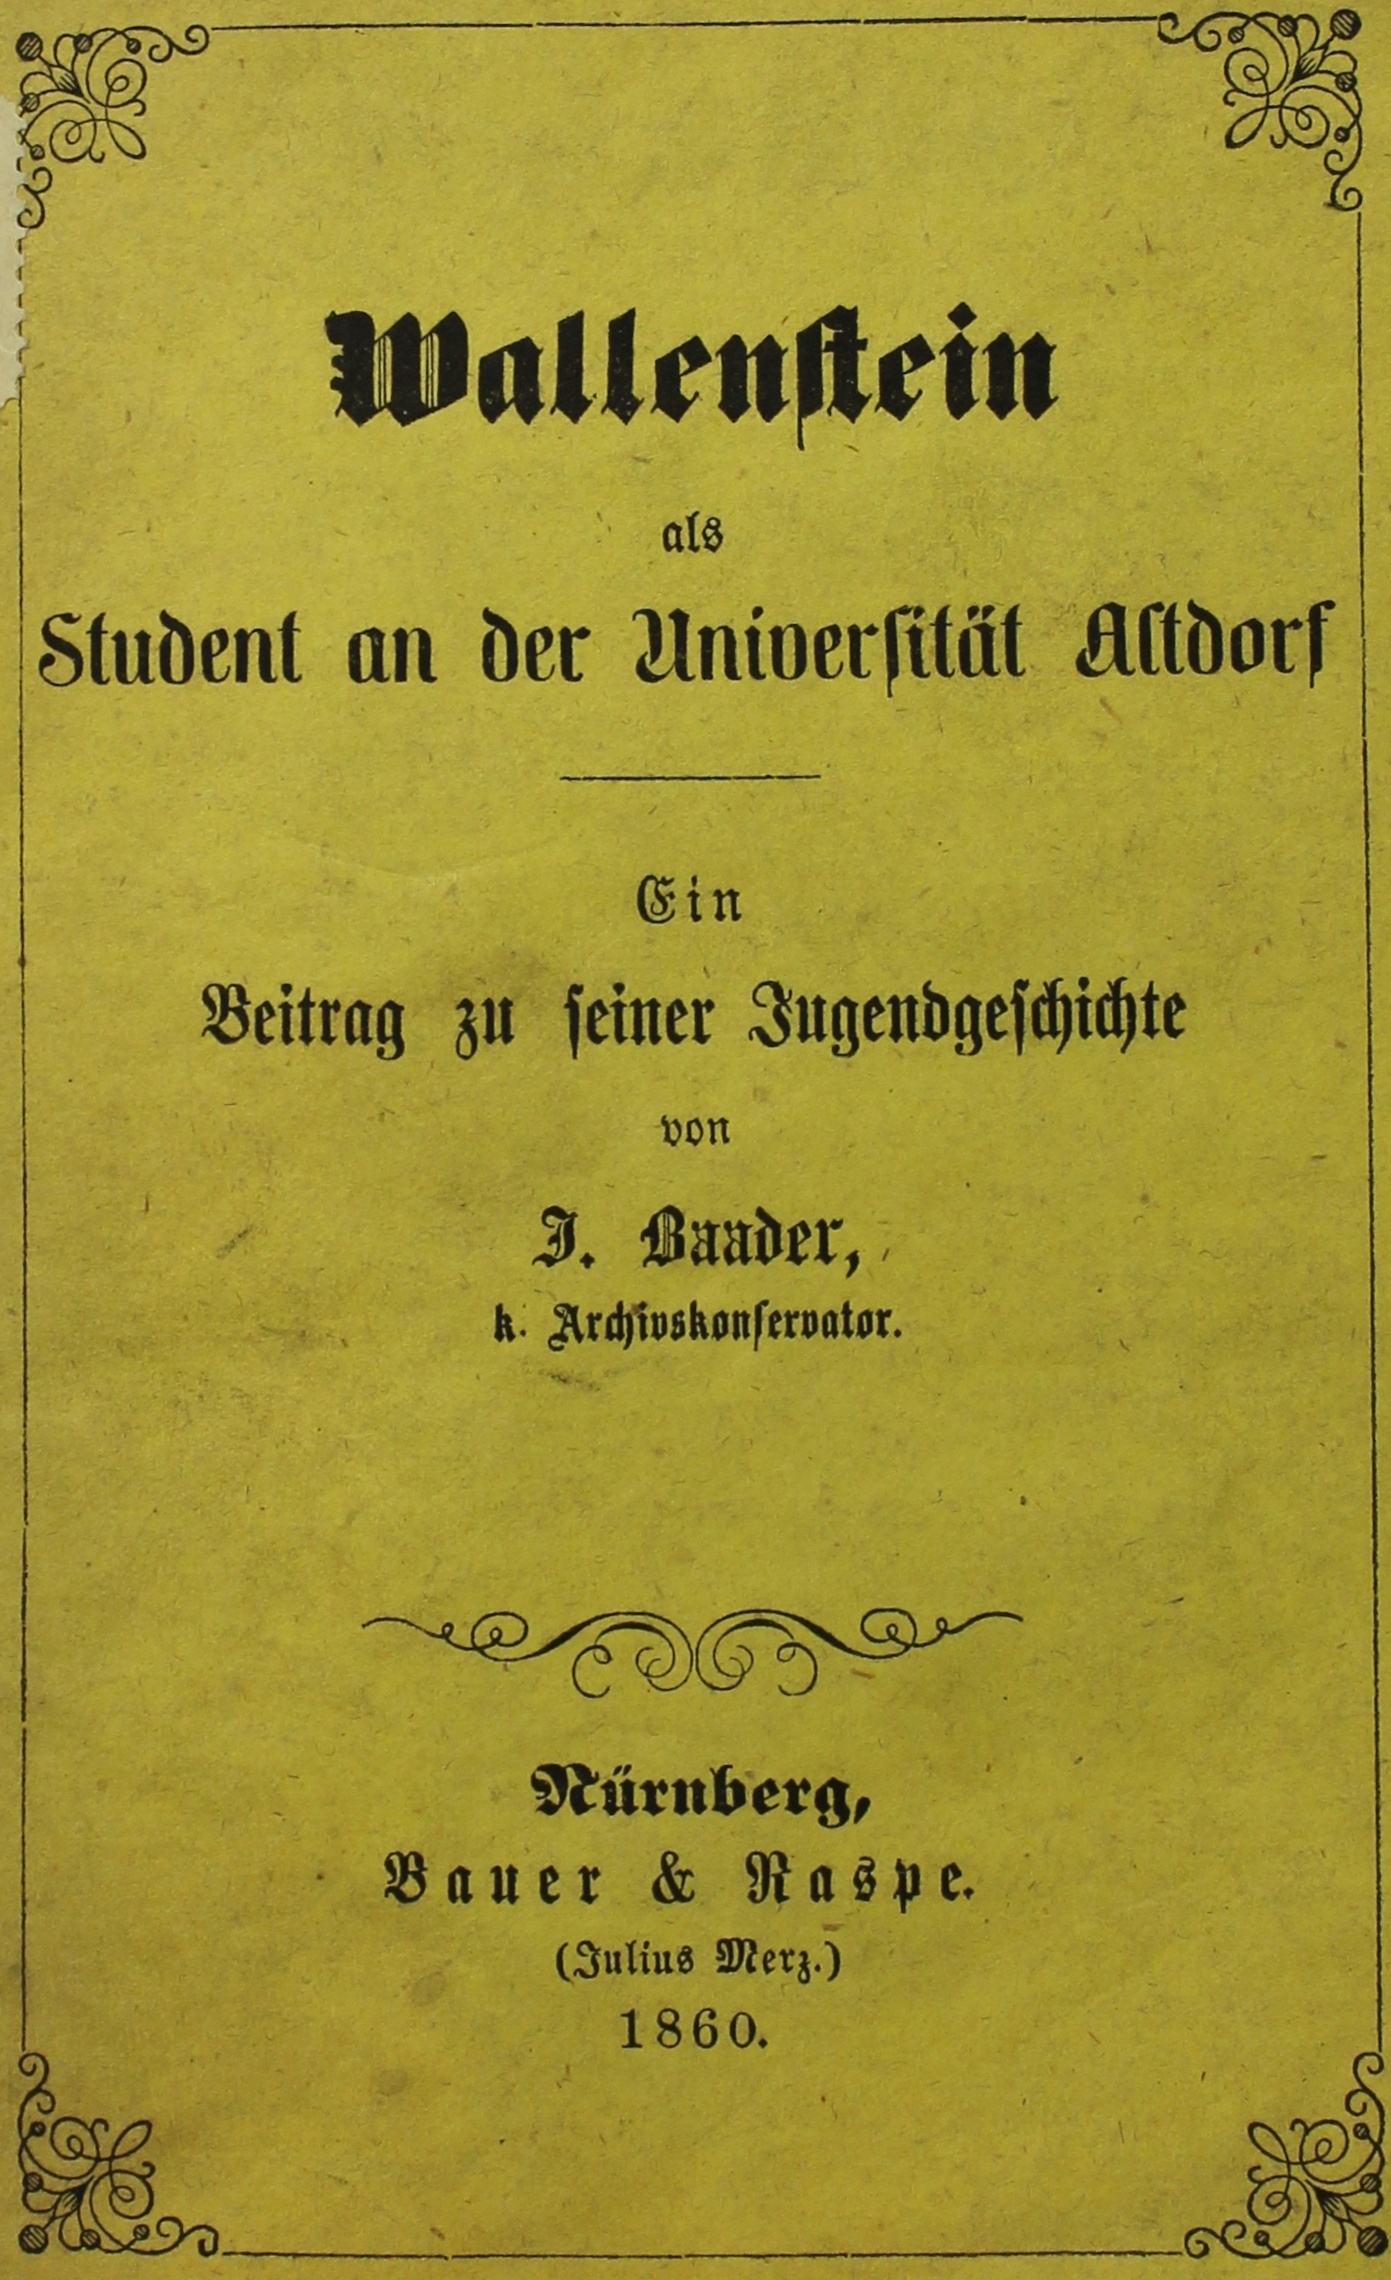 Wallenstein als Student an der Universität Altdorf. Ein Beitrag zu seiner Jugendgeschichte, Nürnberg 1860 (Museum im Schloss Lützen CC BY-NC-SA)